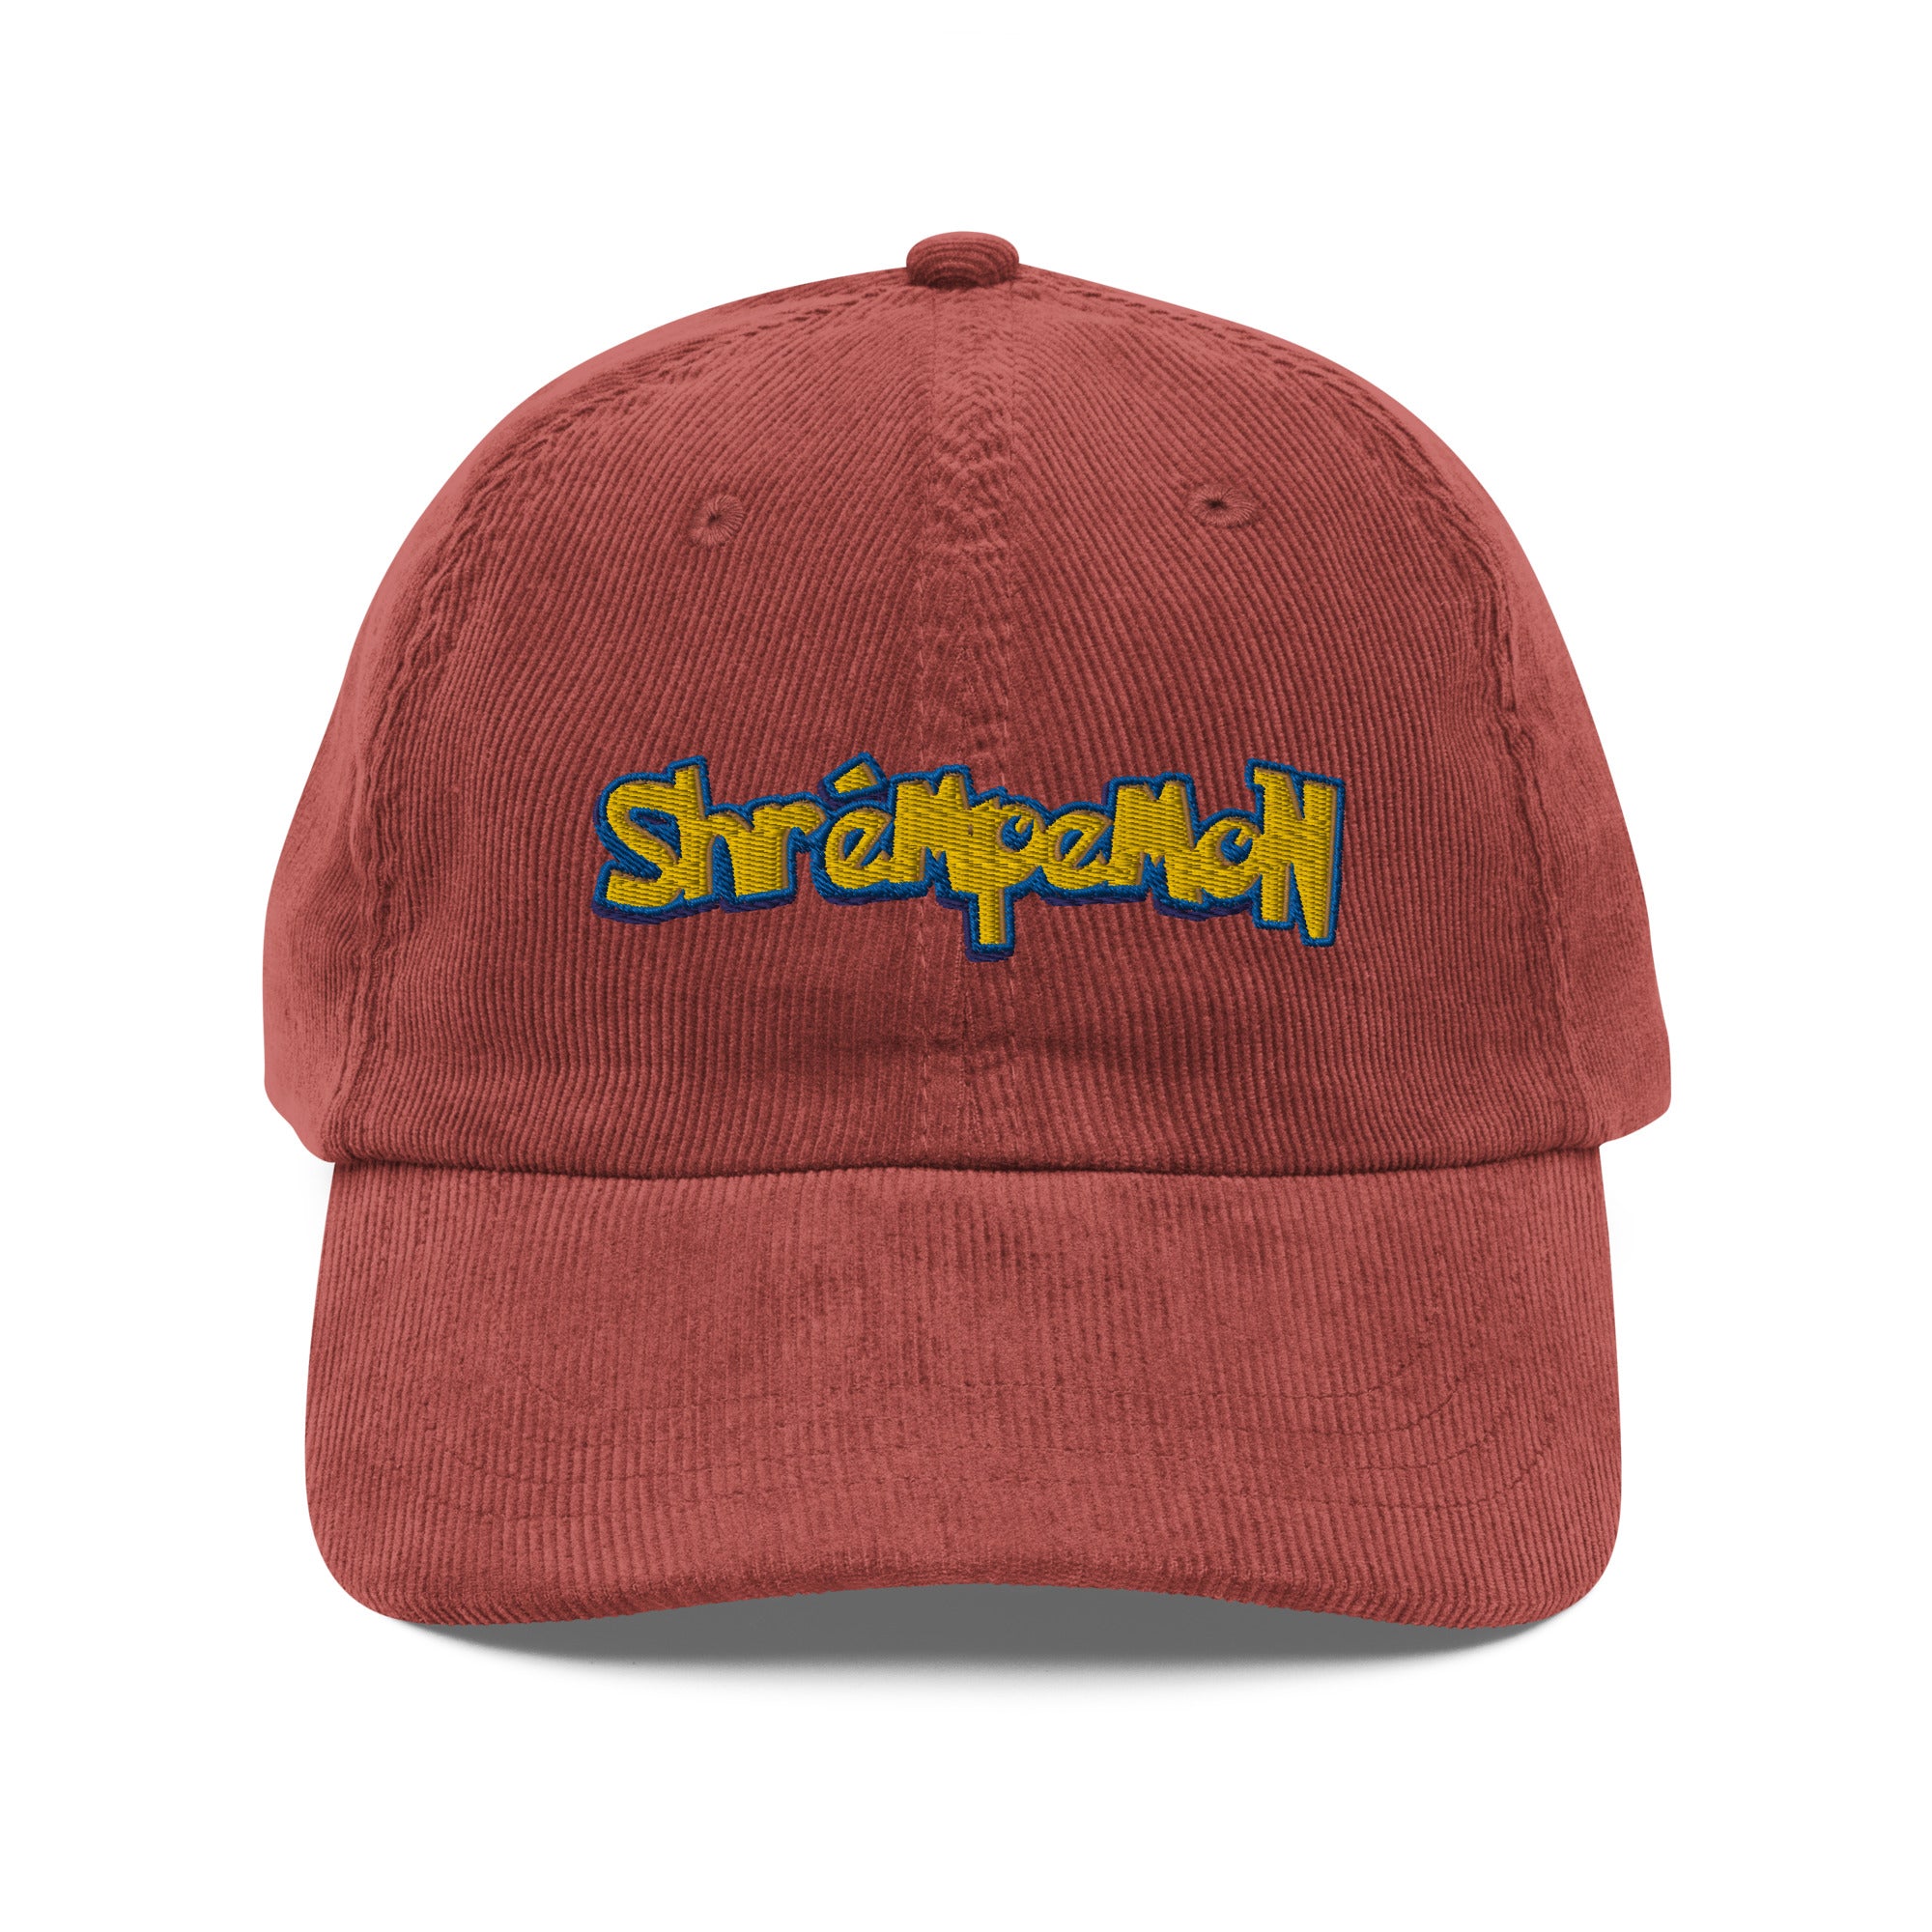 Vintage Shrémpemon Hat